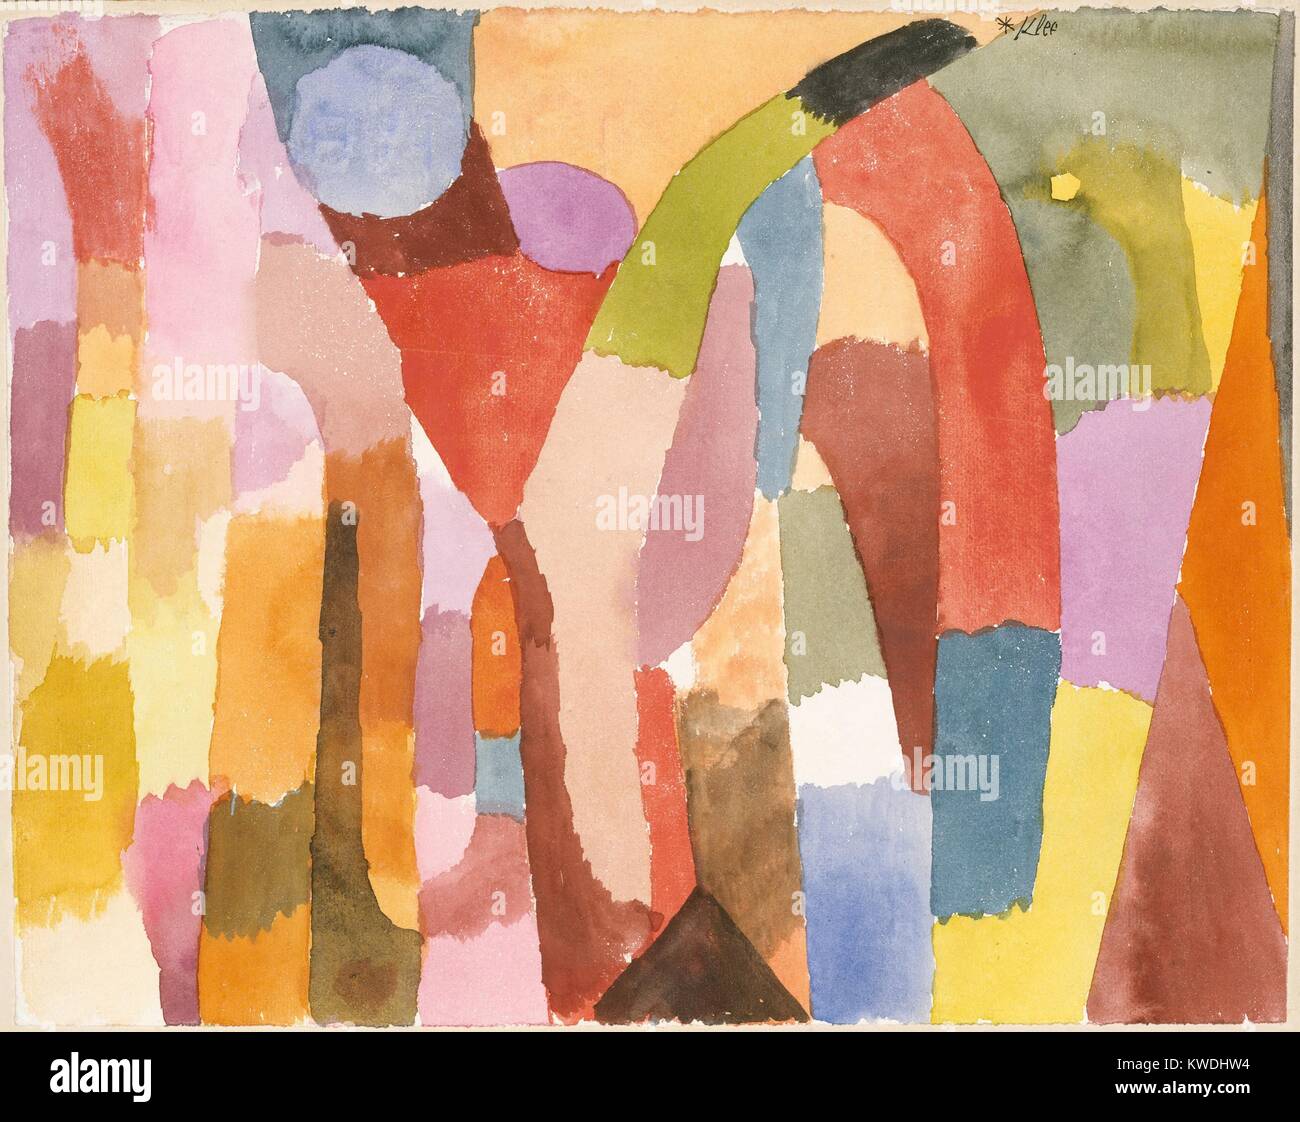 Bewegung der gewölbte Kammern, von Paul Klee, 1915, Schweizer Zeichnung, Aquarell auf Papier. Abstrakten Flächen von heller Farbe vorschlagen Architektur (BSLOC 2017 7 44) Stockfoto